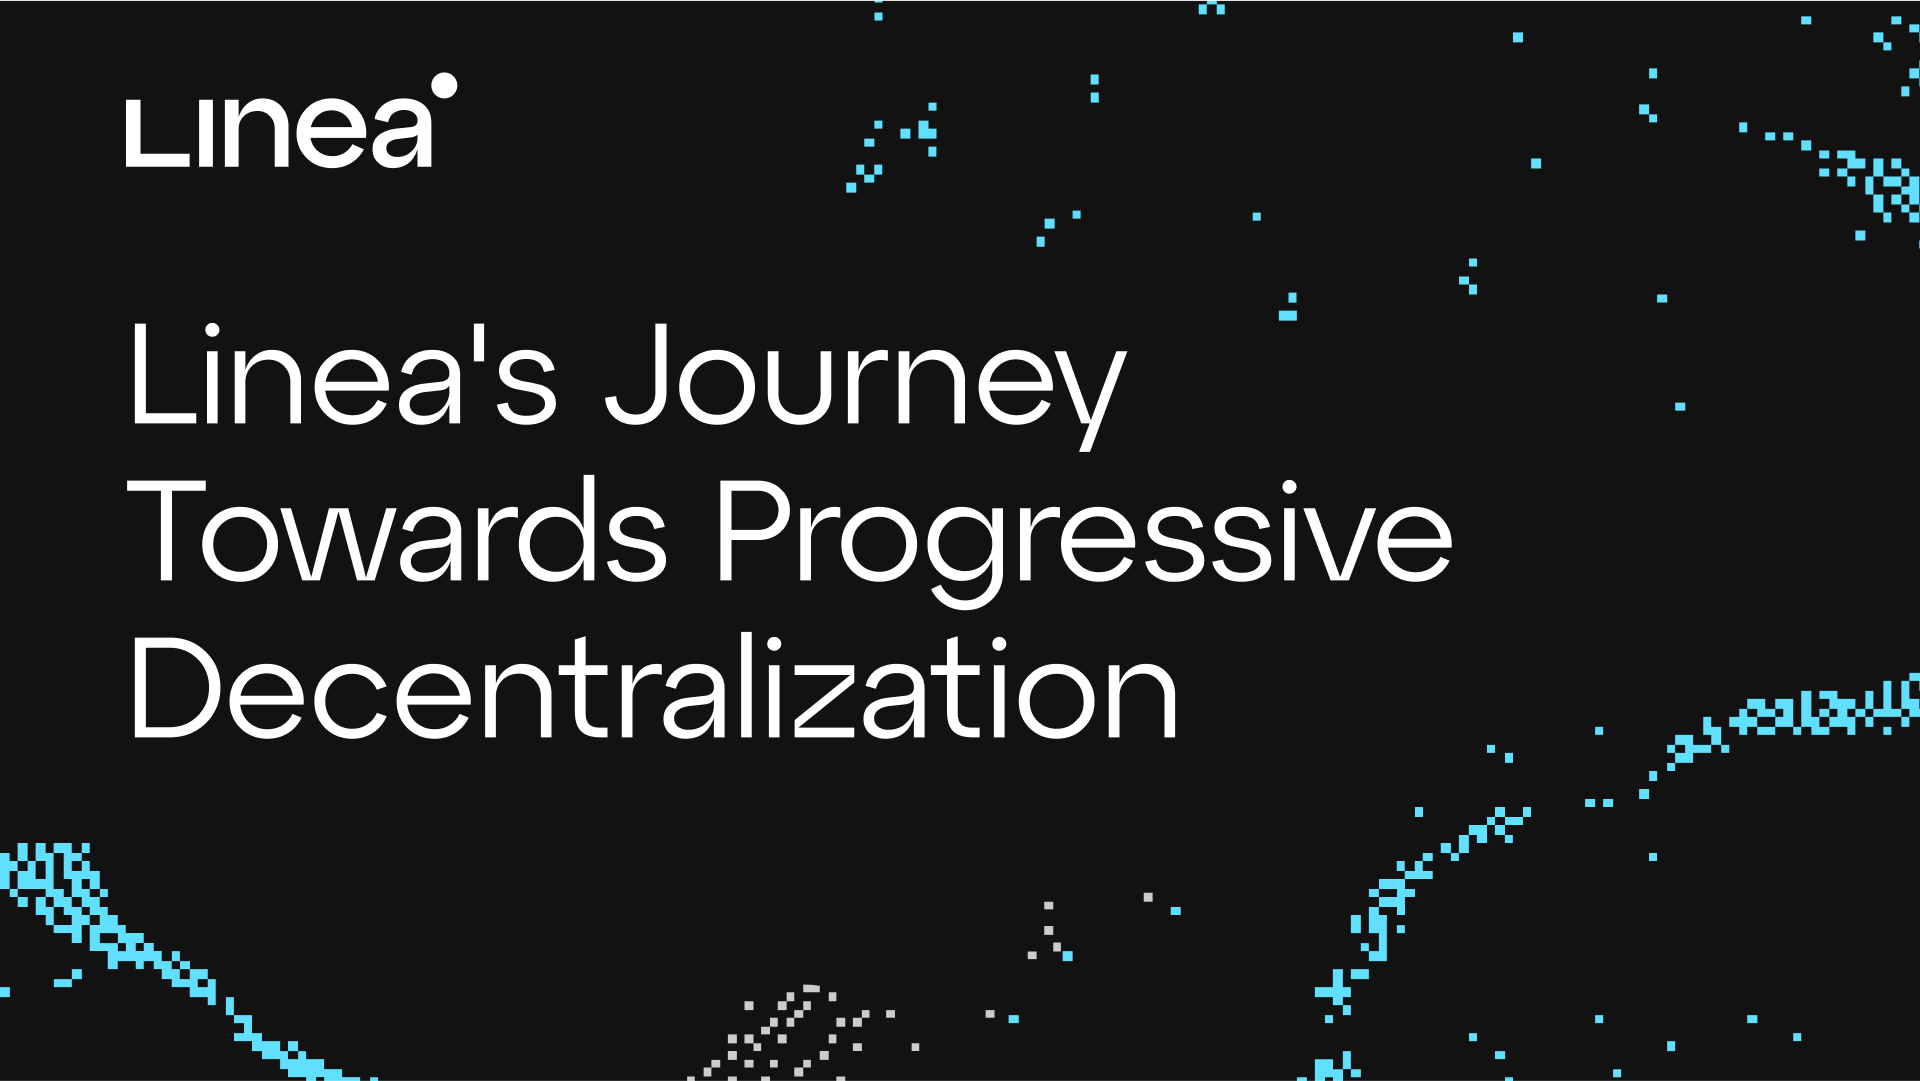 Călătoria Linea către descentralizare progresivă: cheia minimizării încrederii cu tehnologia zero-knowledge